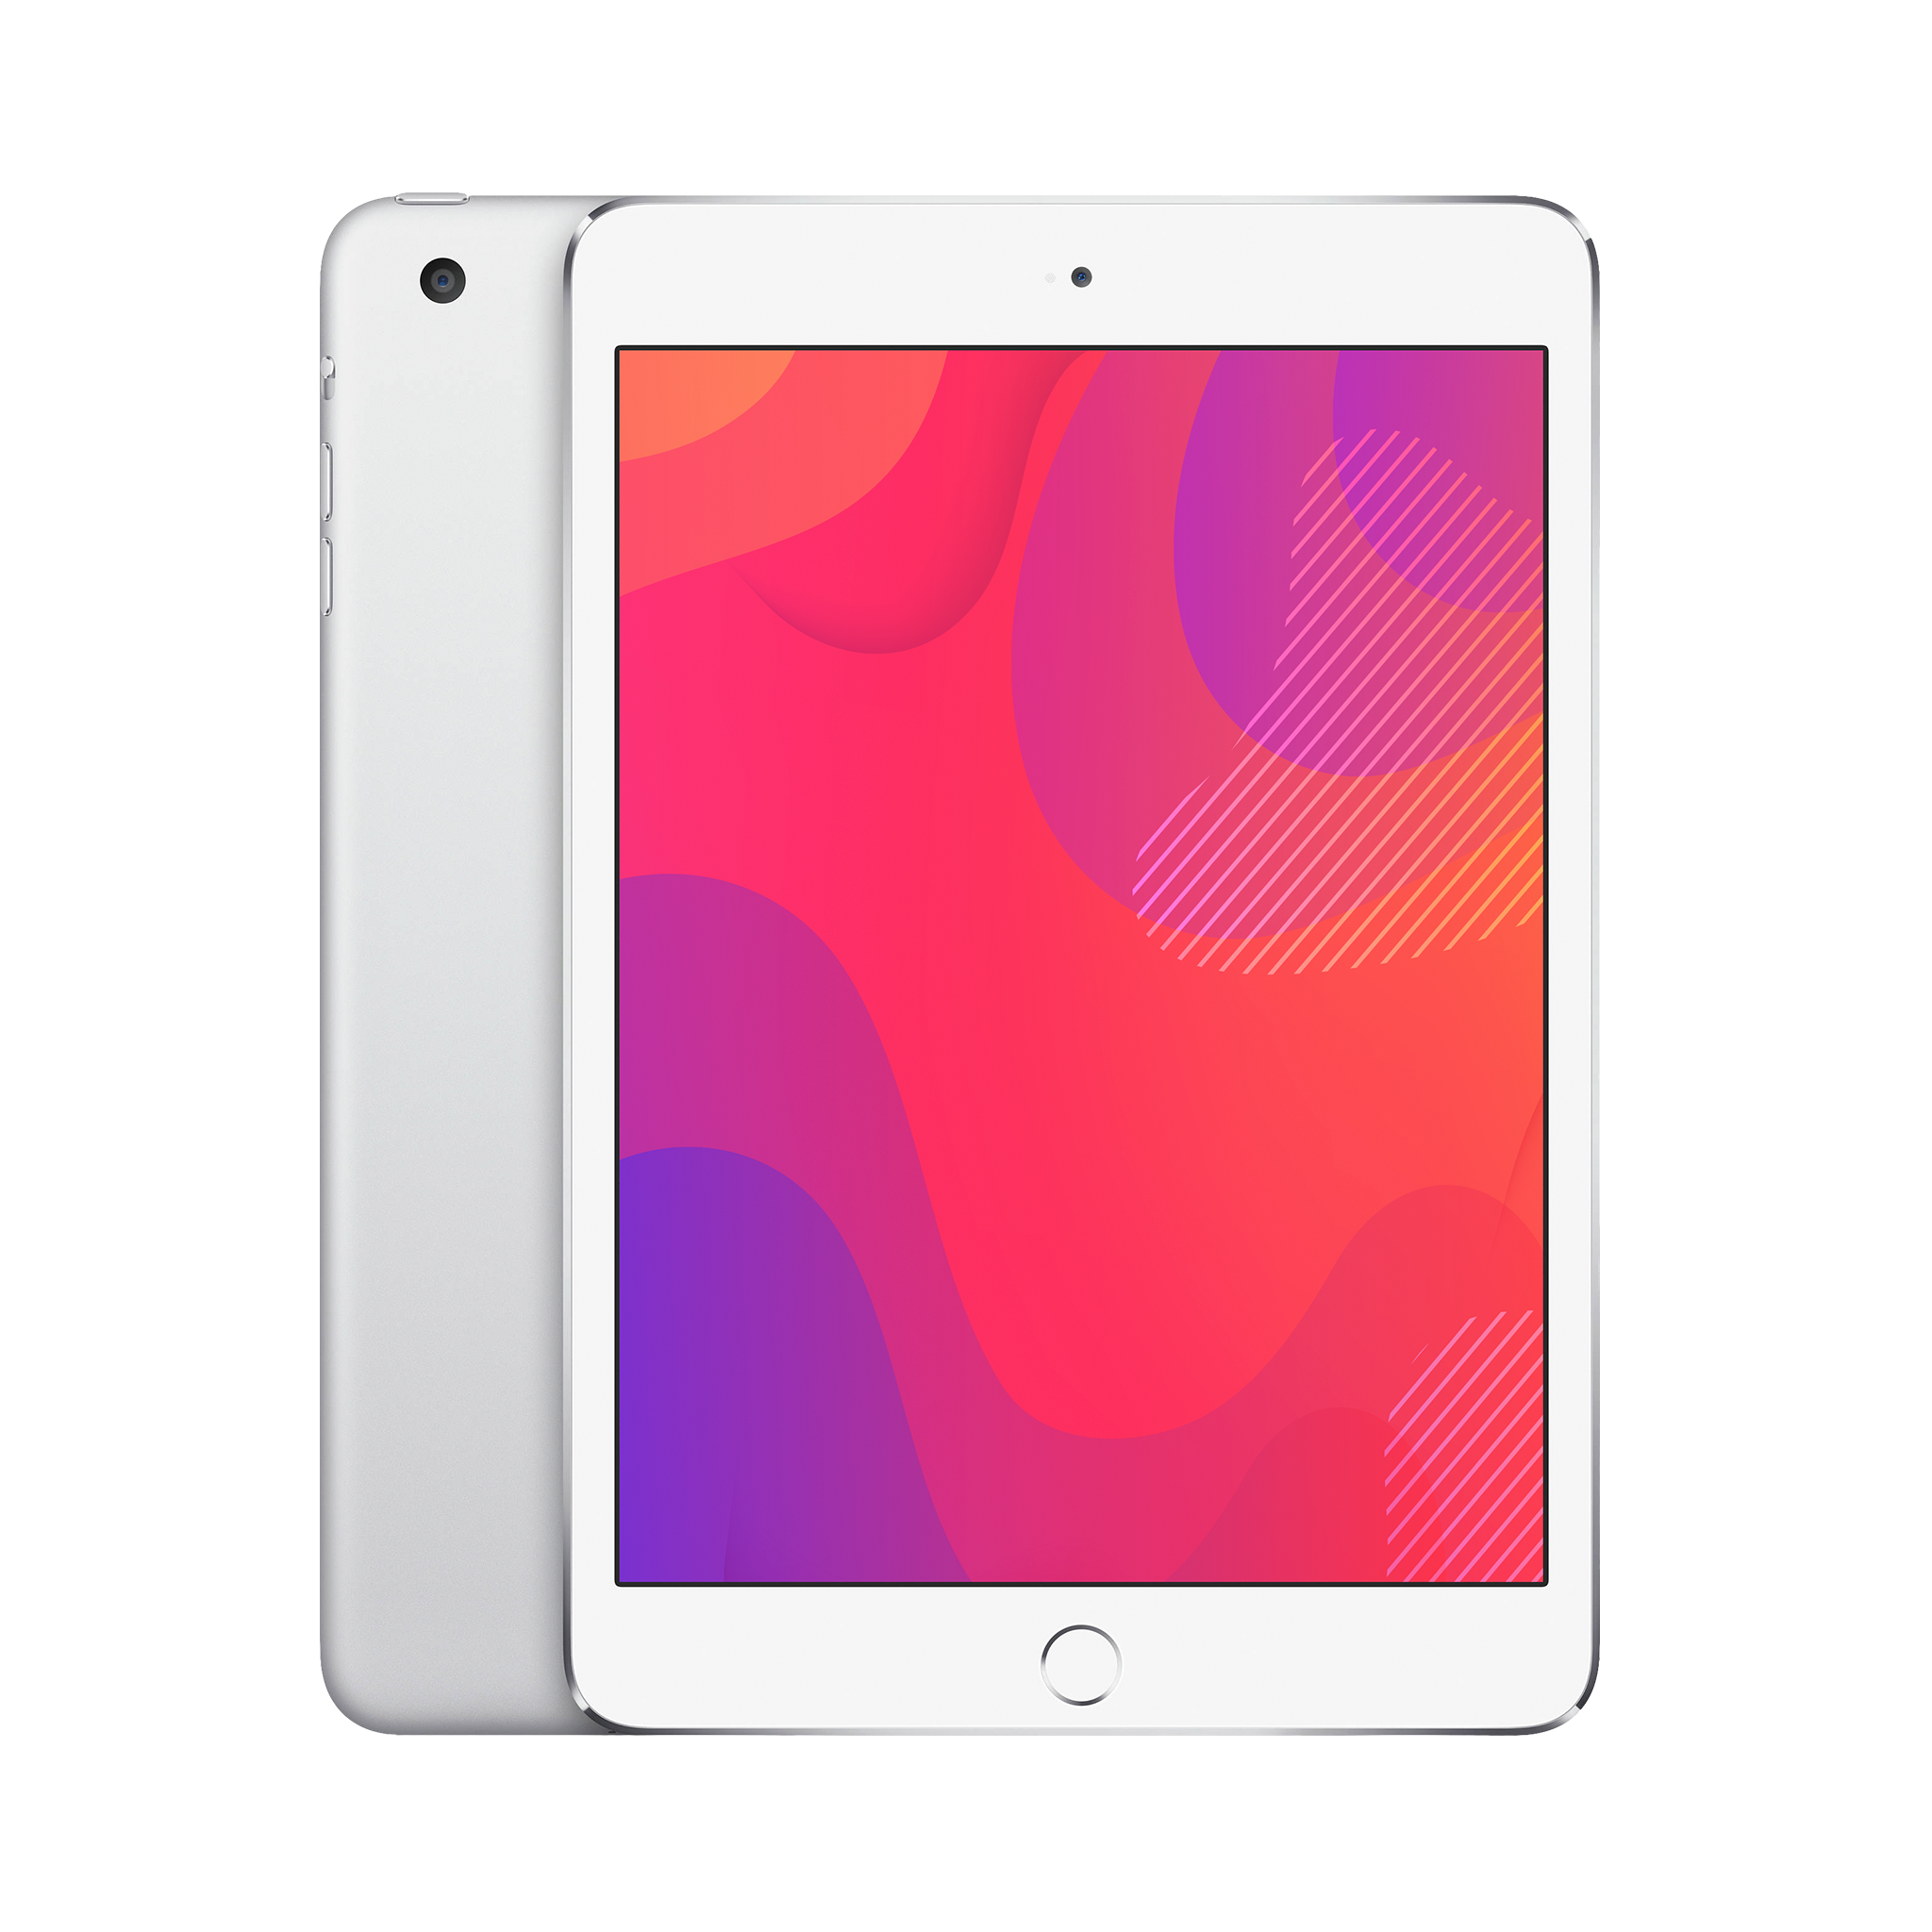 Apple iPad Mini 3 (WiFi + Cellular) 16GB Silver